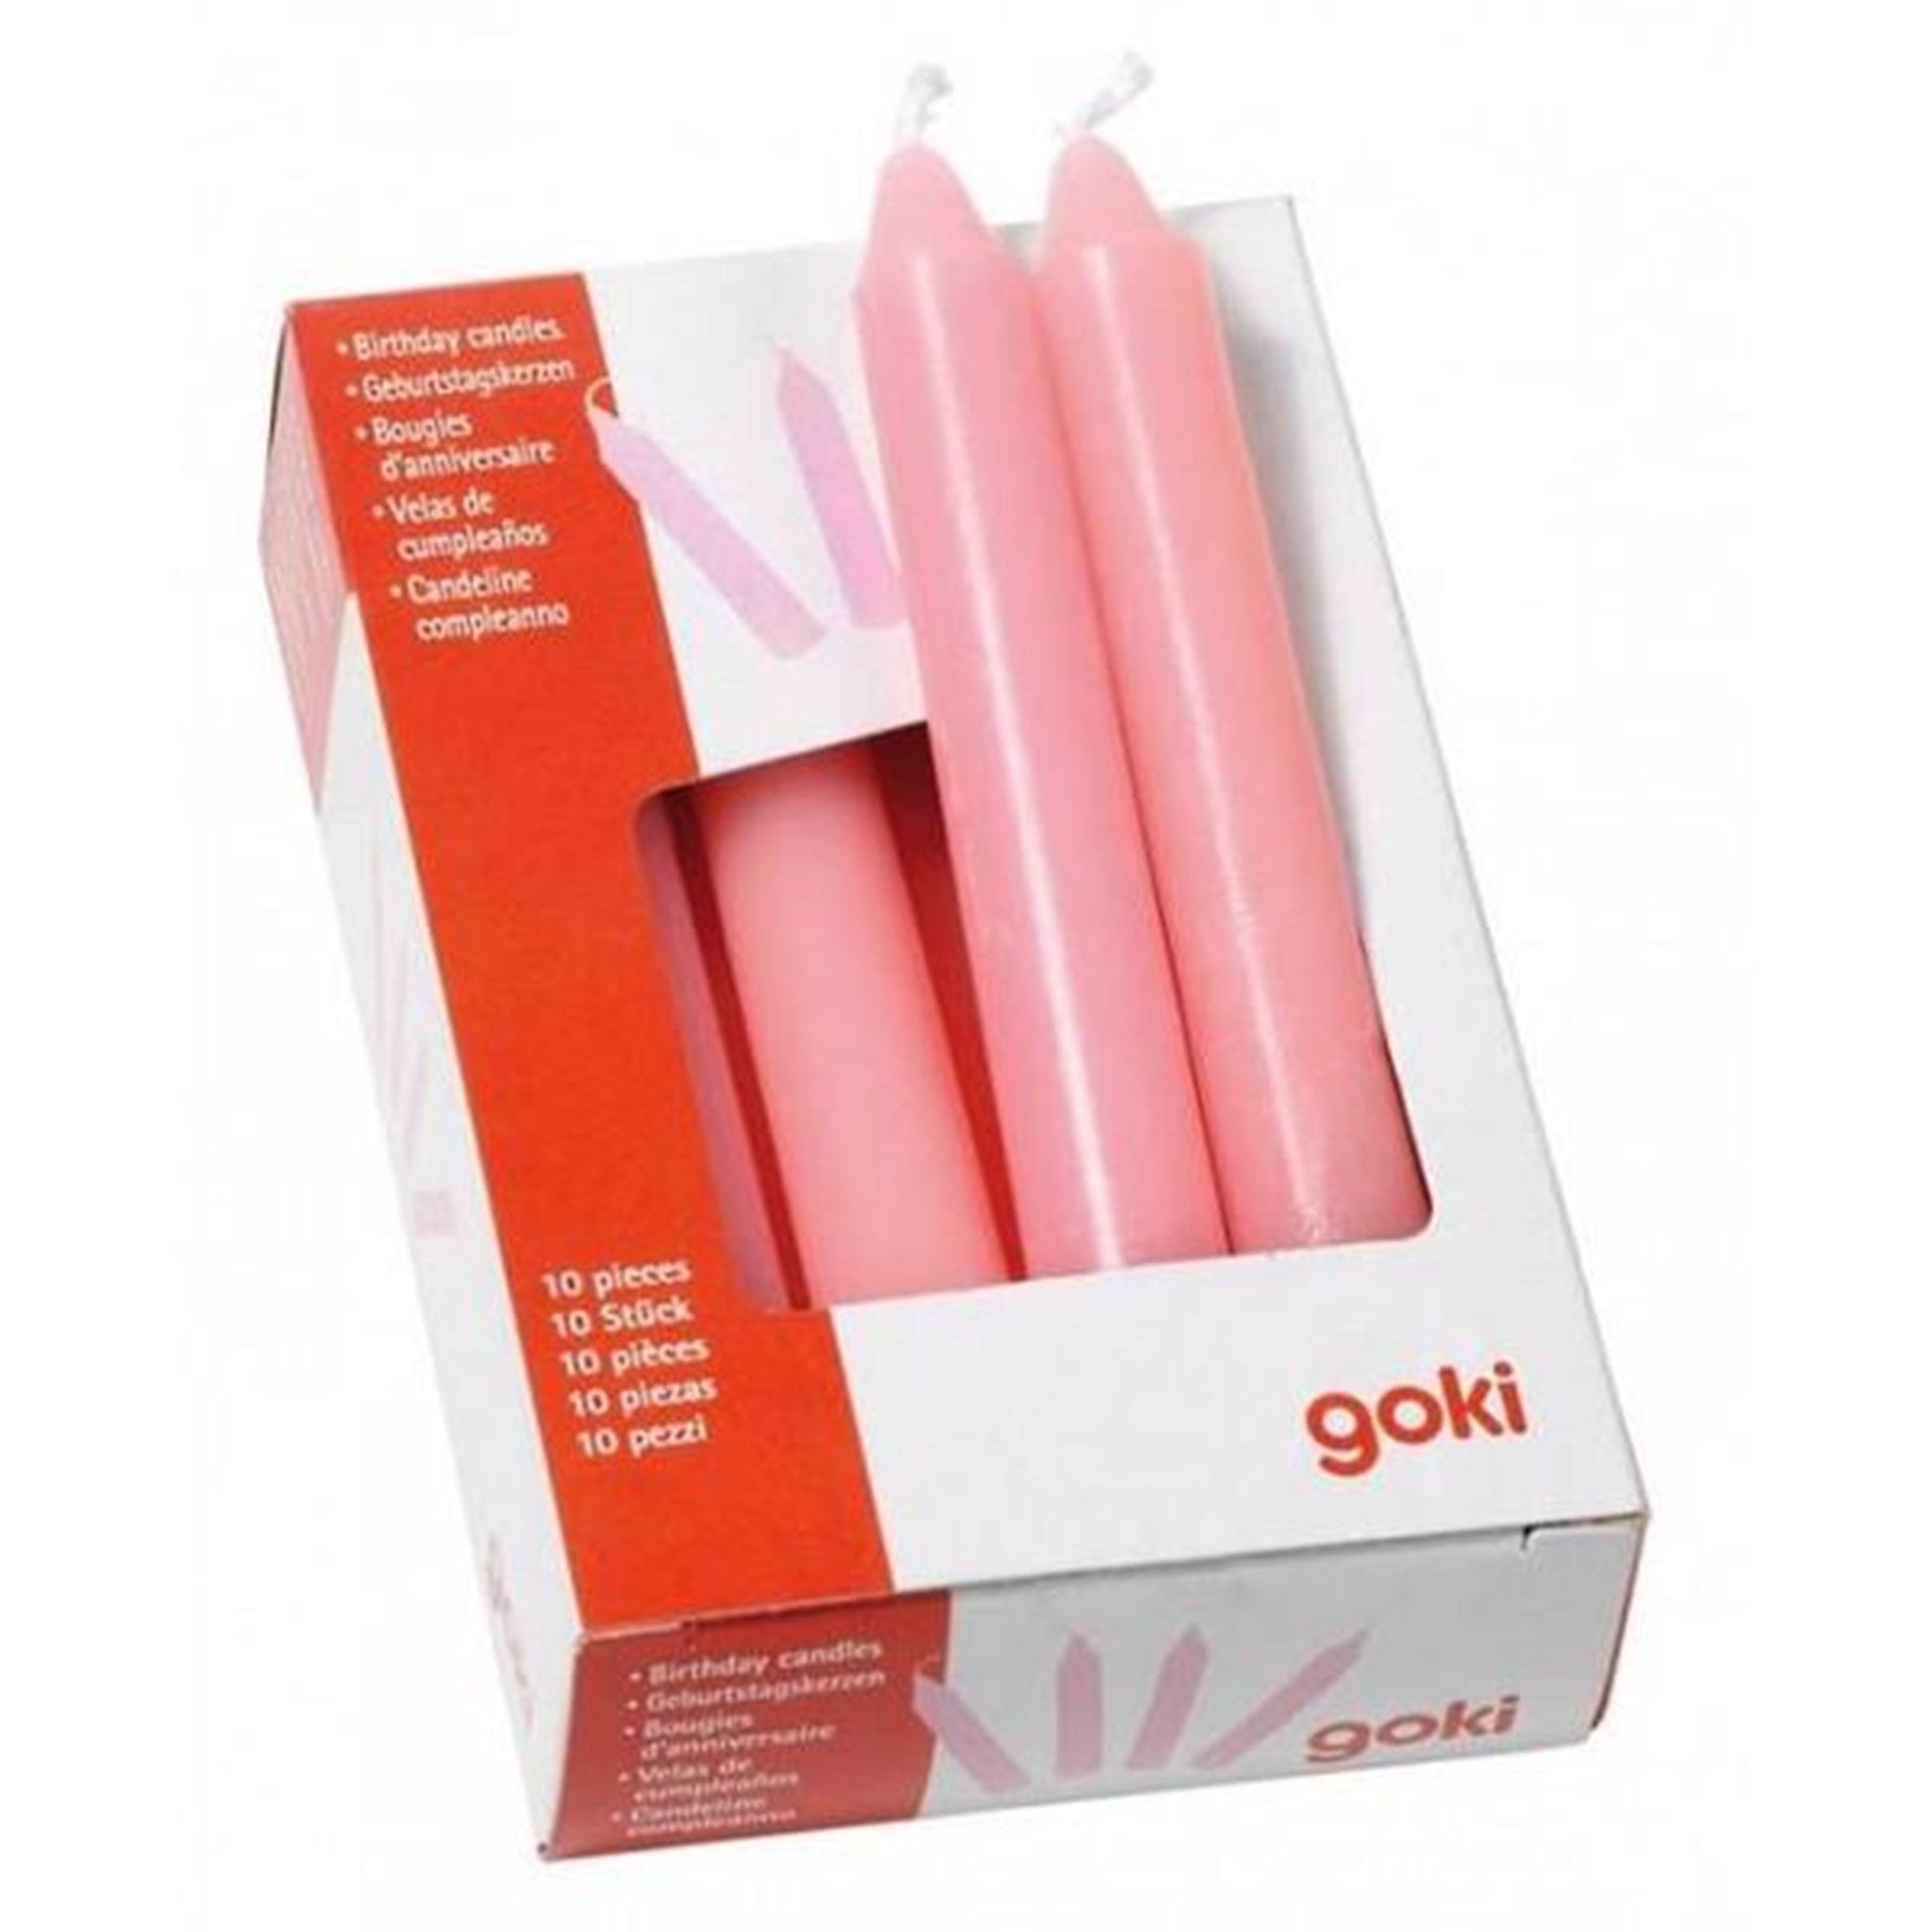 Goki生日列车蜡烛粉红色 - 为每个生日增添额外的乐趣